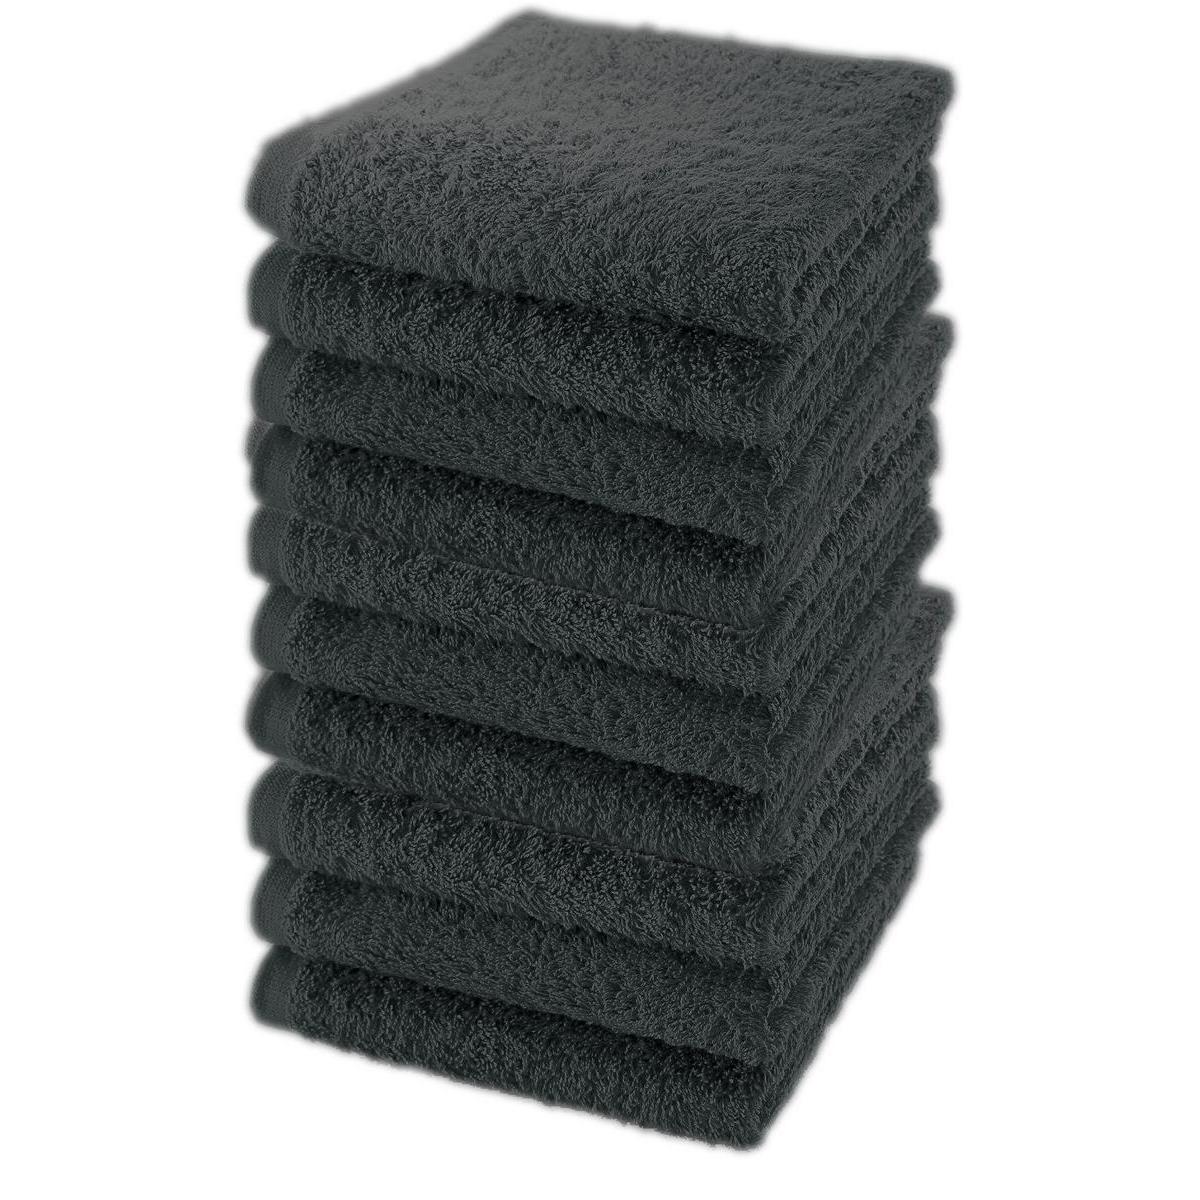 10 serviettes de bain - 100 % coton - 30 x 50 cm - Gris clair et foncé